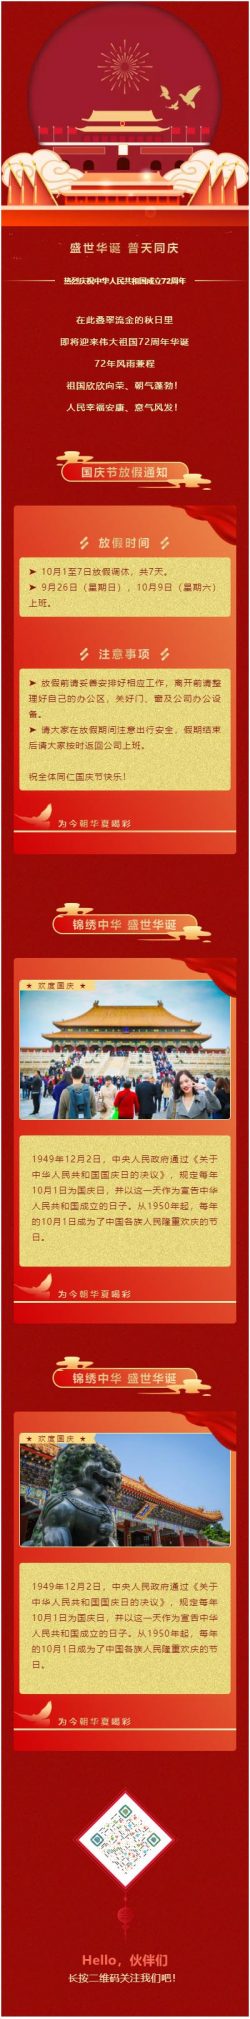 中华人民共和国成立72周年微信公众号推文模板订阅号国庆节素材推文资料